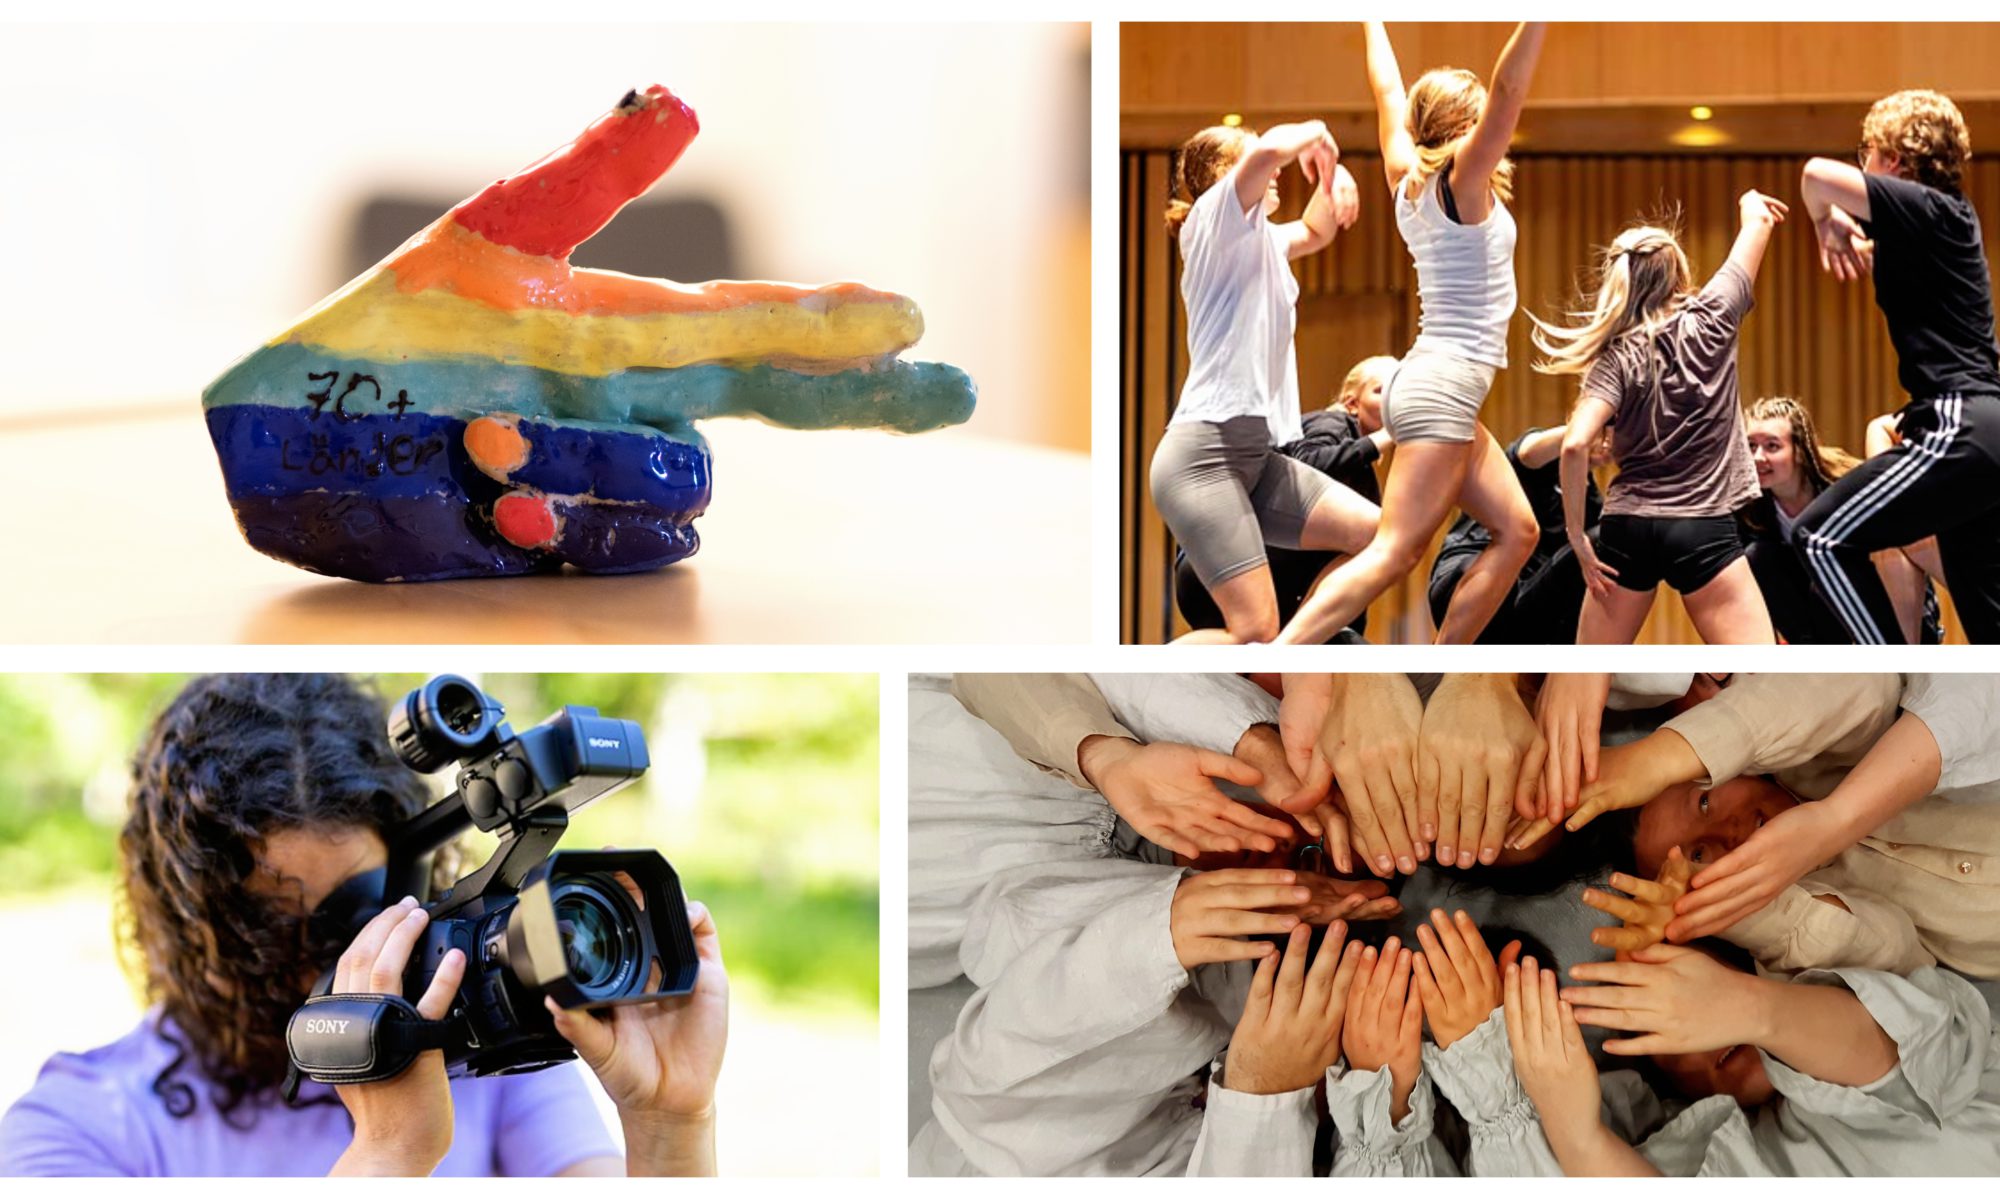 Ett collage av bilder med en ung tjej med kamera, flera unga i dans och rörelse, en regnbågsfärgad hand i keramik